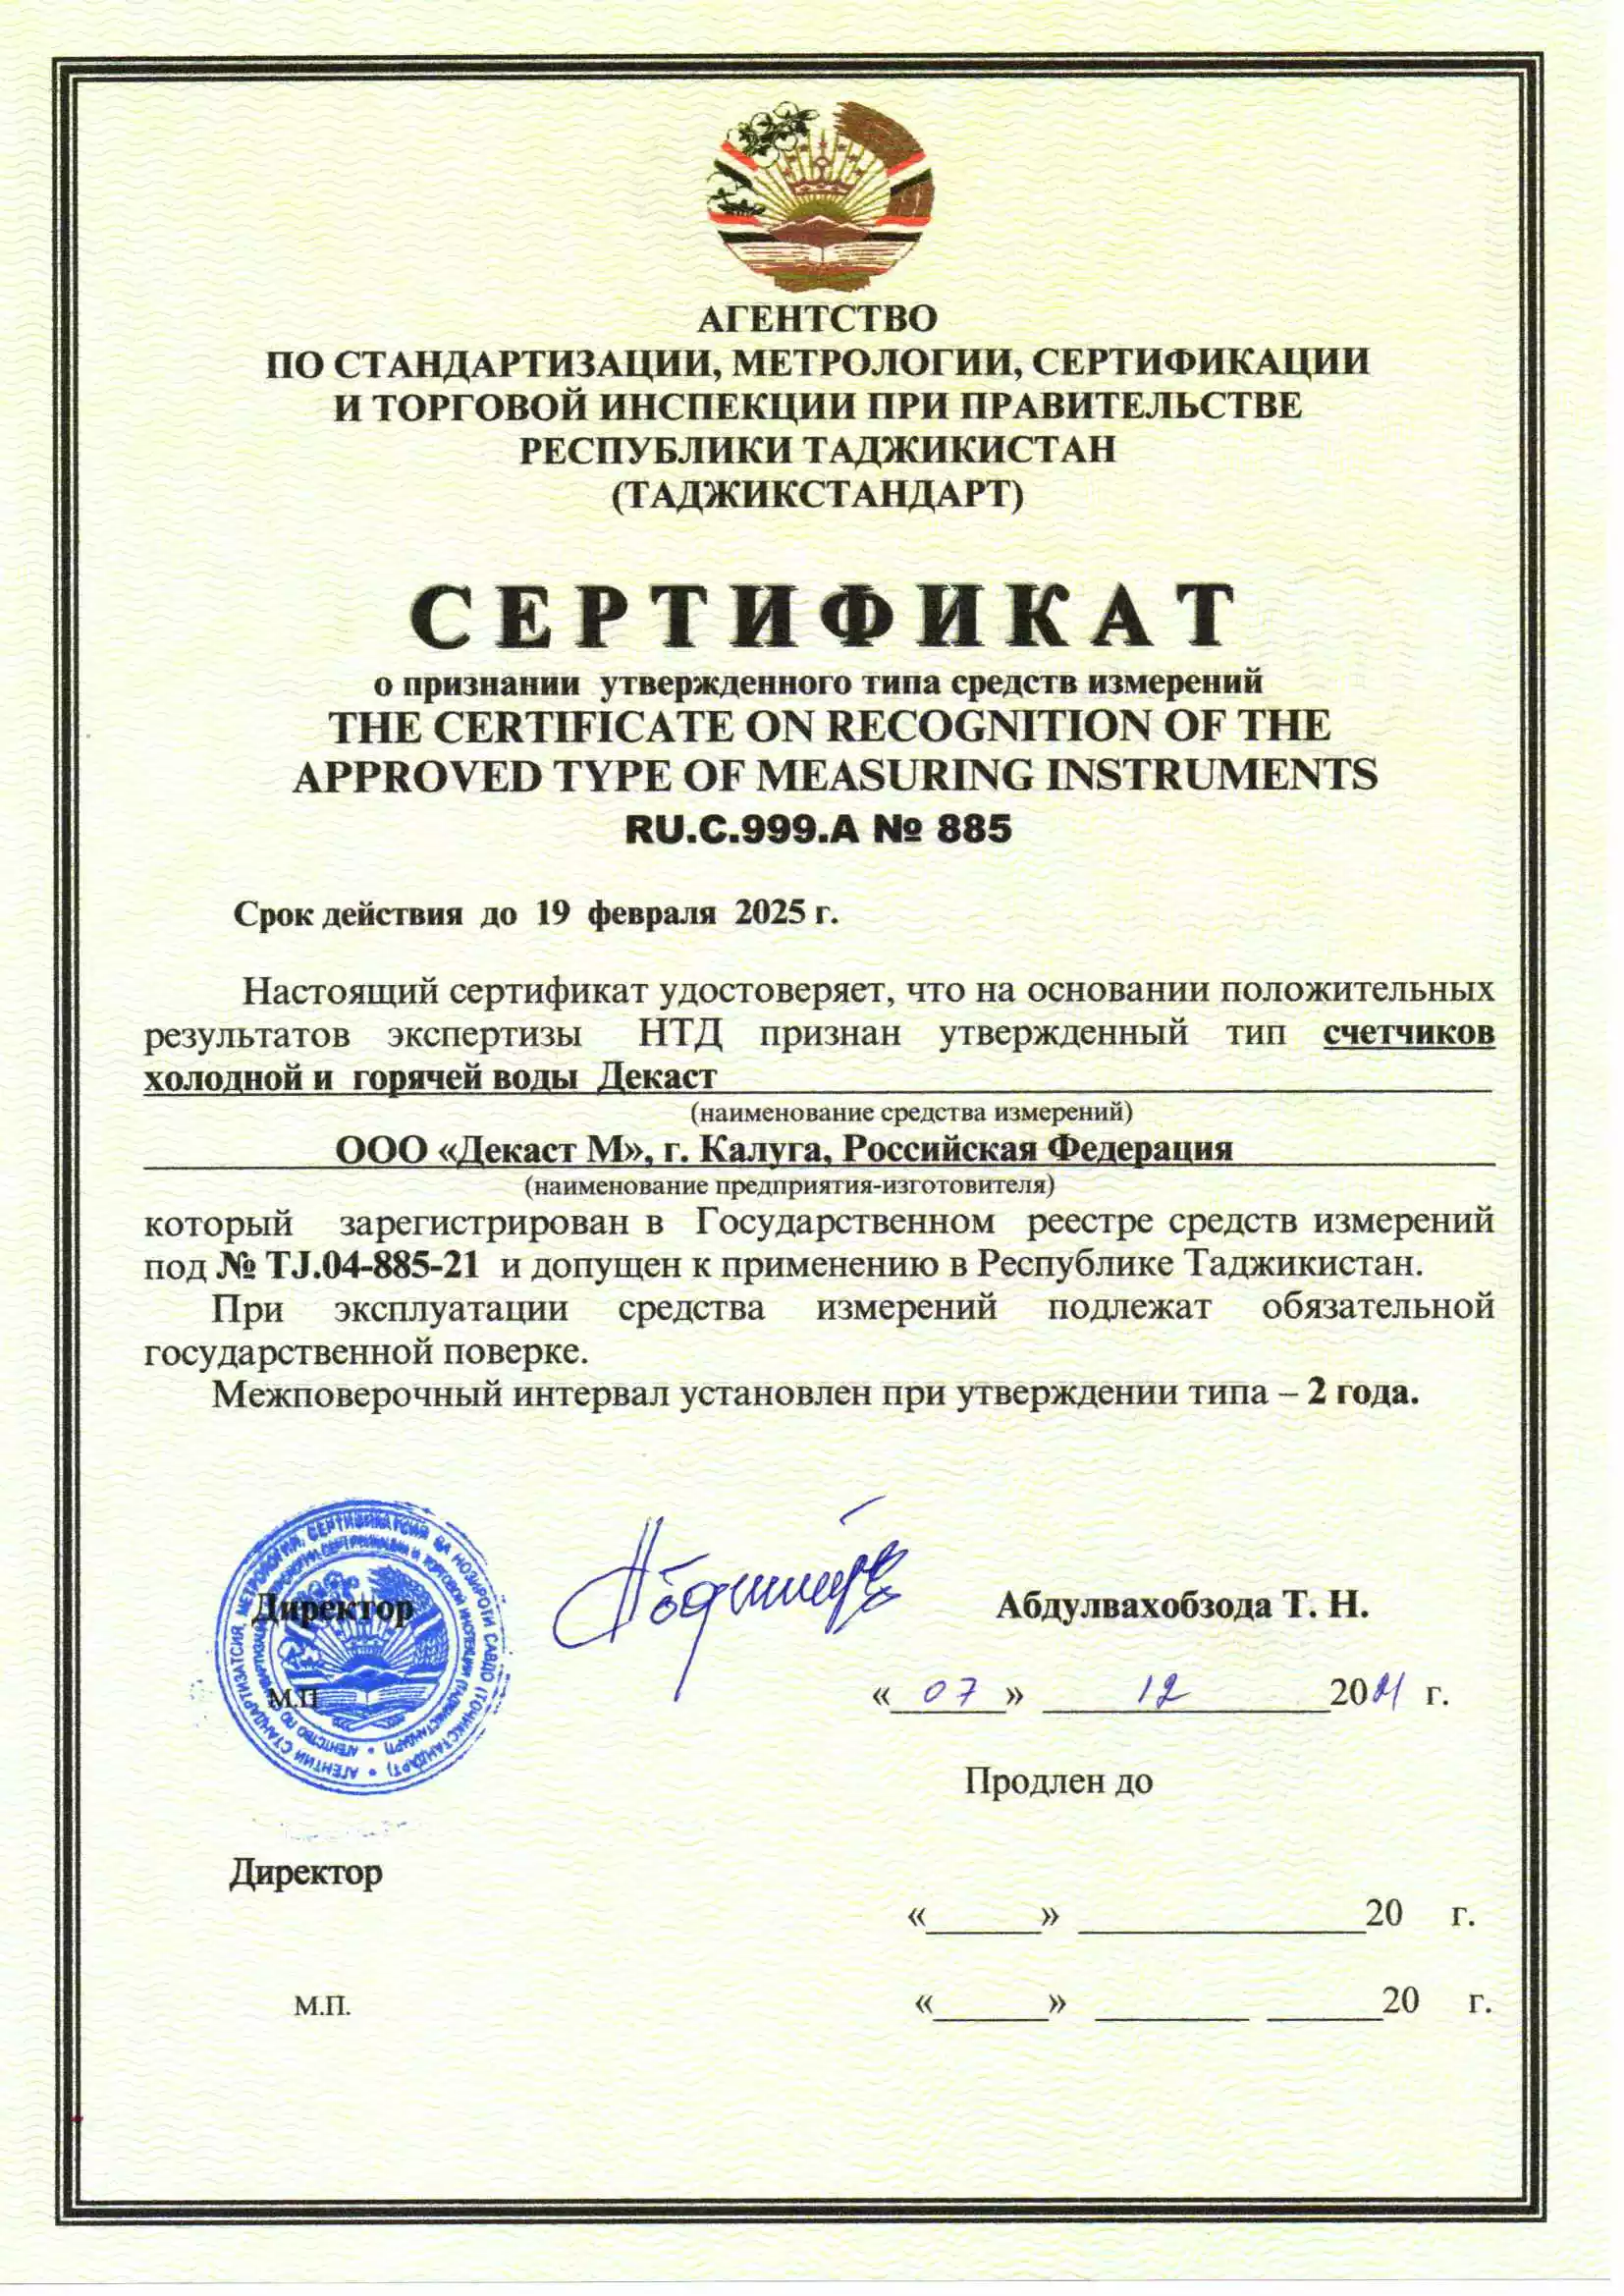 Сертификат о признании утверждения типа средств измерений Счетчики холодной и горячей воды Декаст, Таджикистан., до 19.02.2025 (ru)